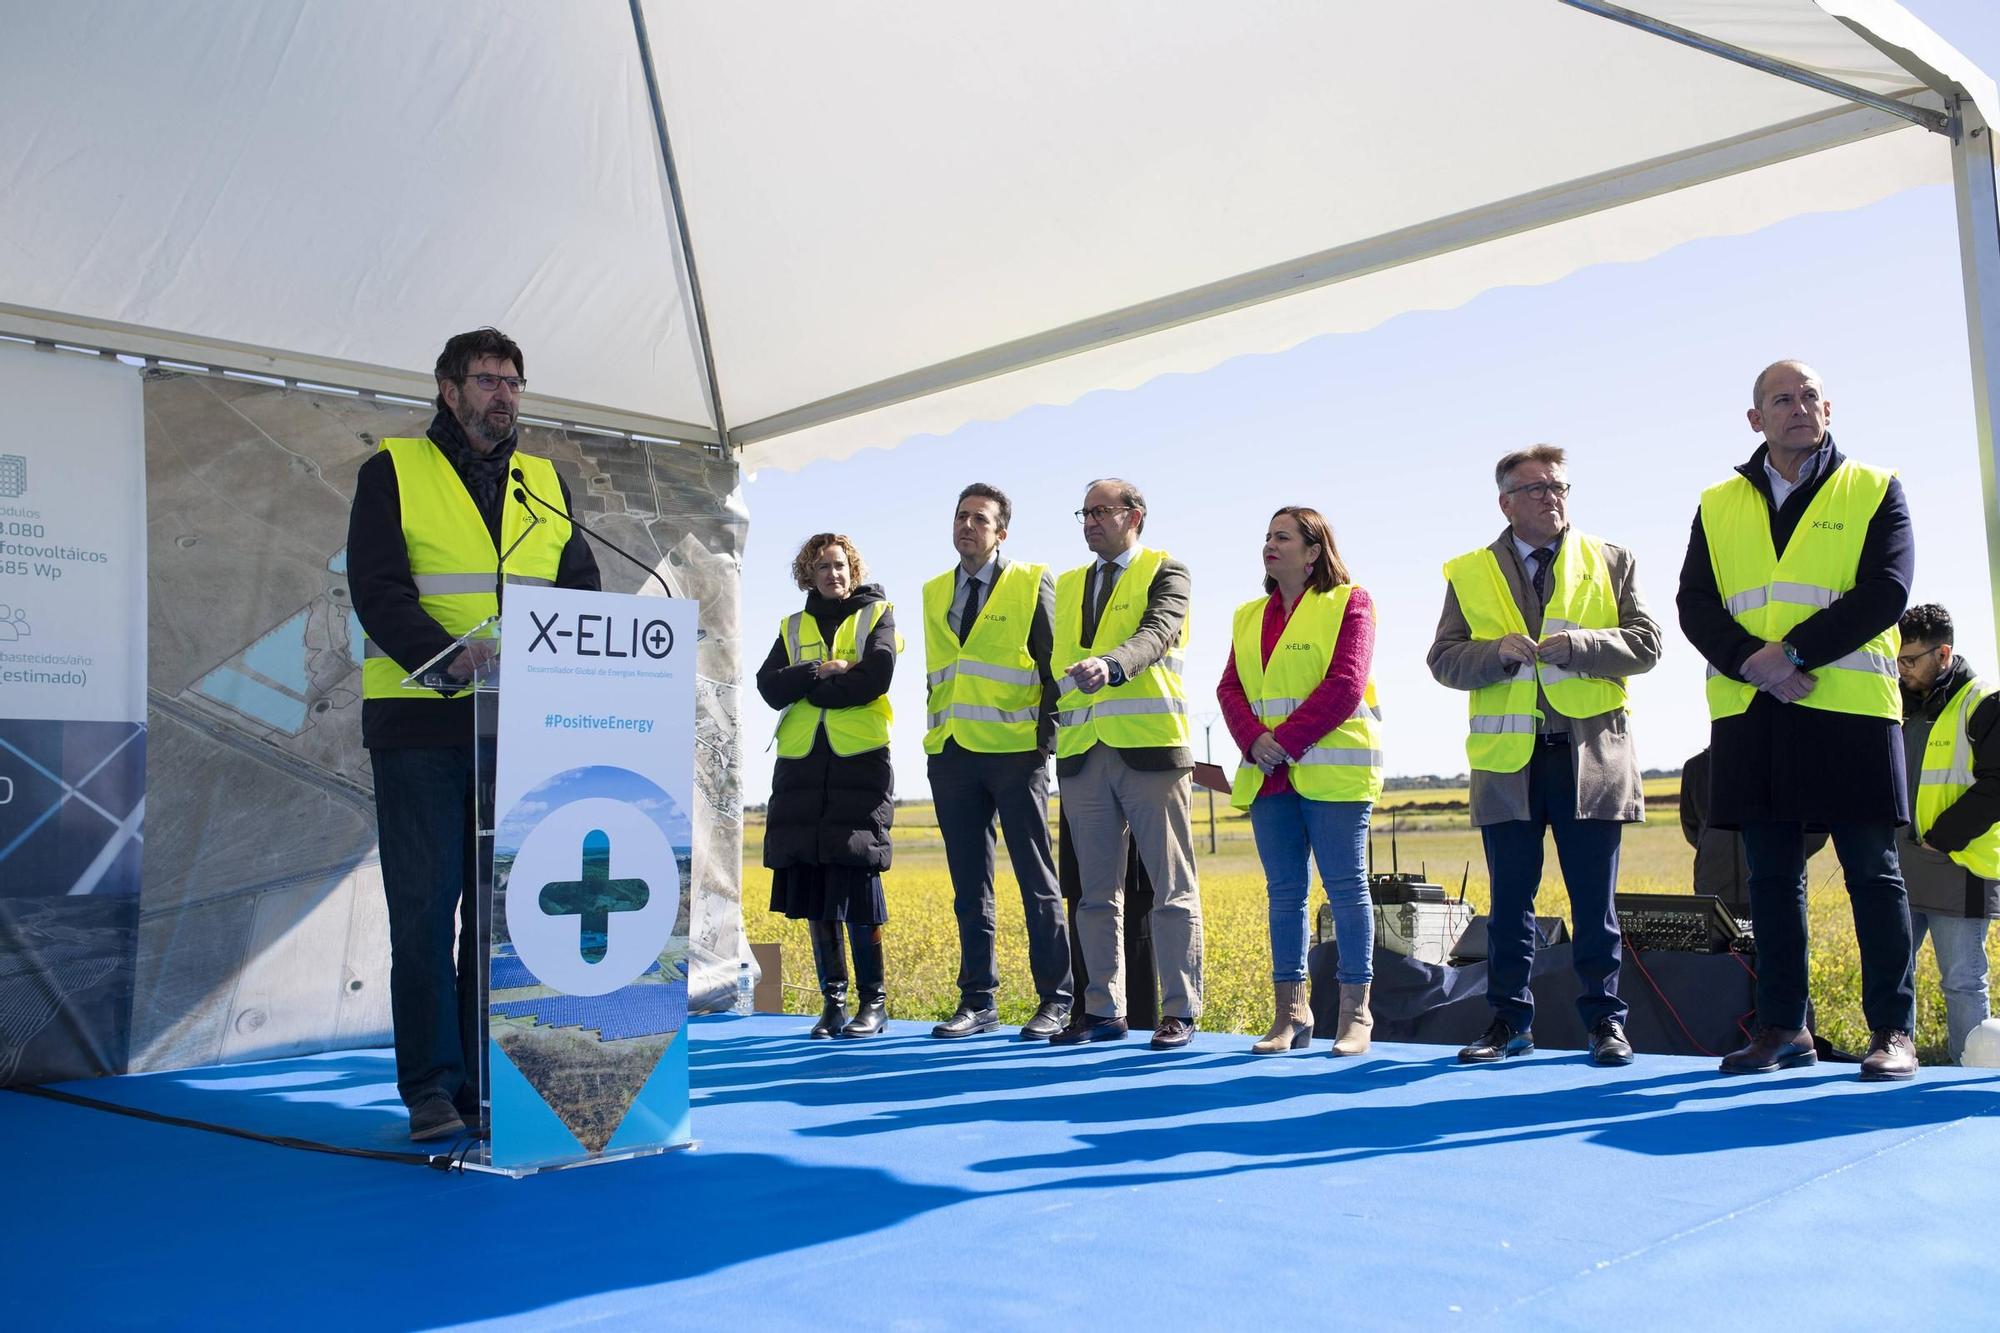 La planta fotovoltaica Arco I de Malpartida de Cáceres creará 300 puestos de trabajo y abastecerá a 20.525 hogares cada año